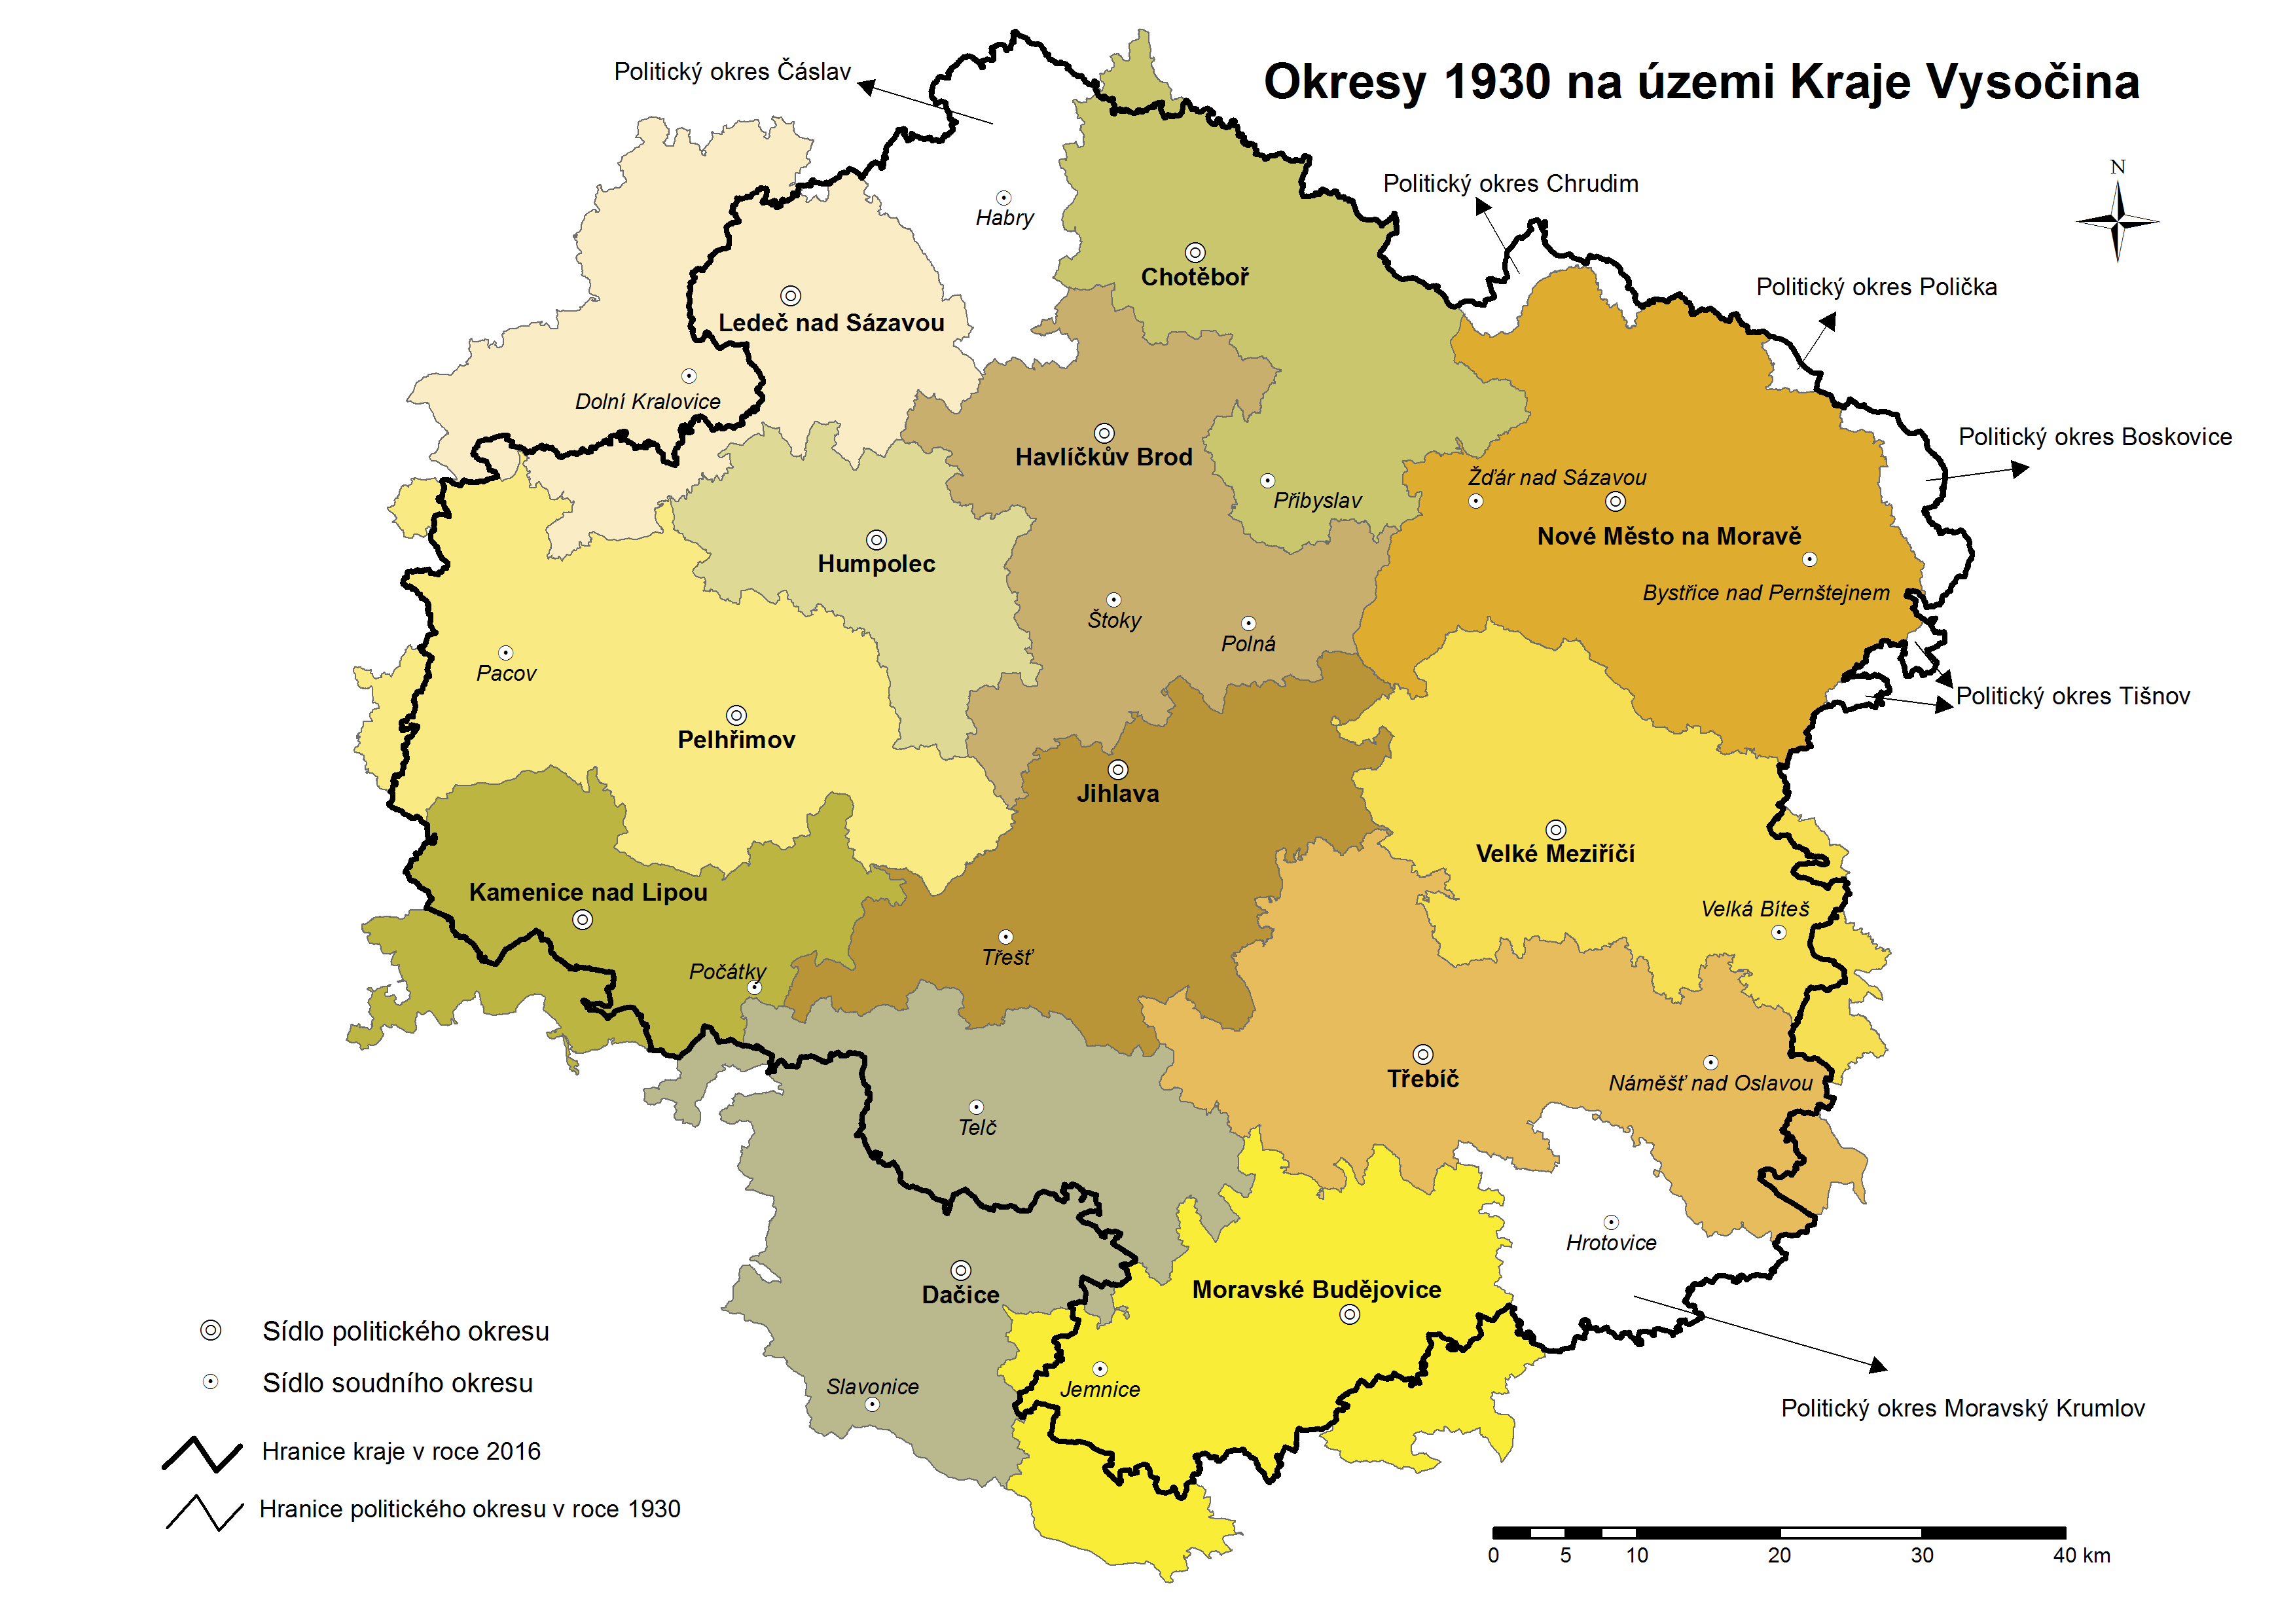 Okresy v letech 1930 na území Kraje Vysočina